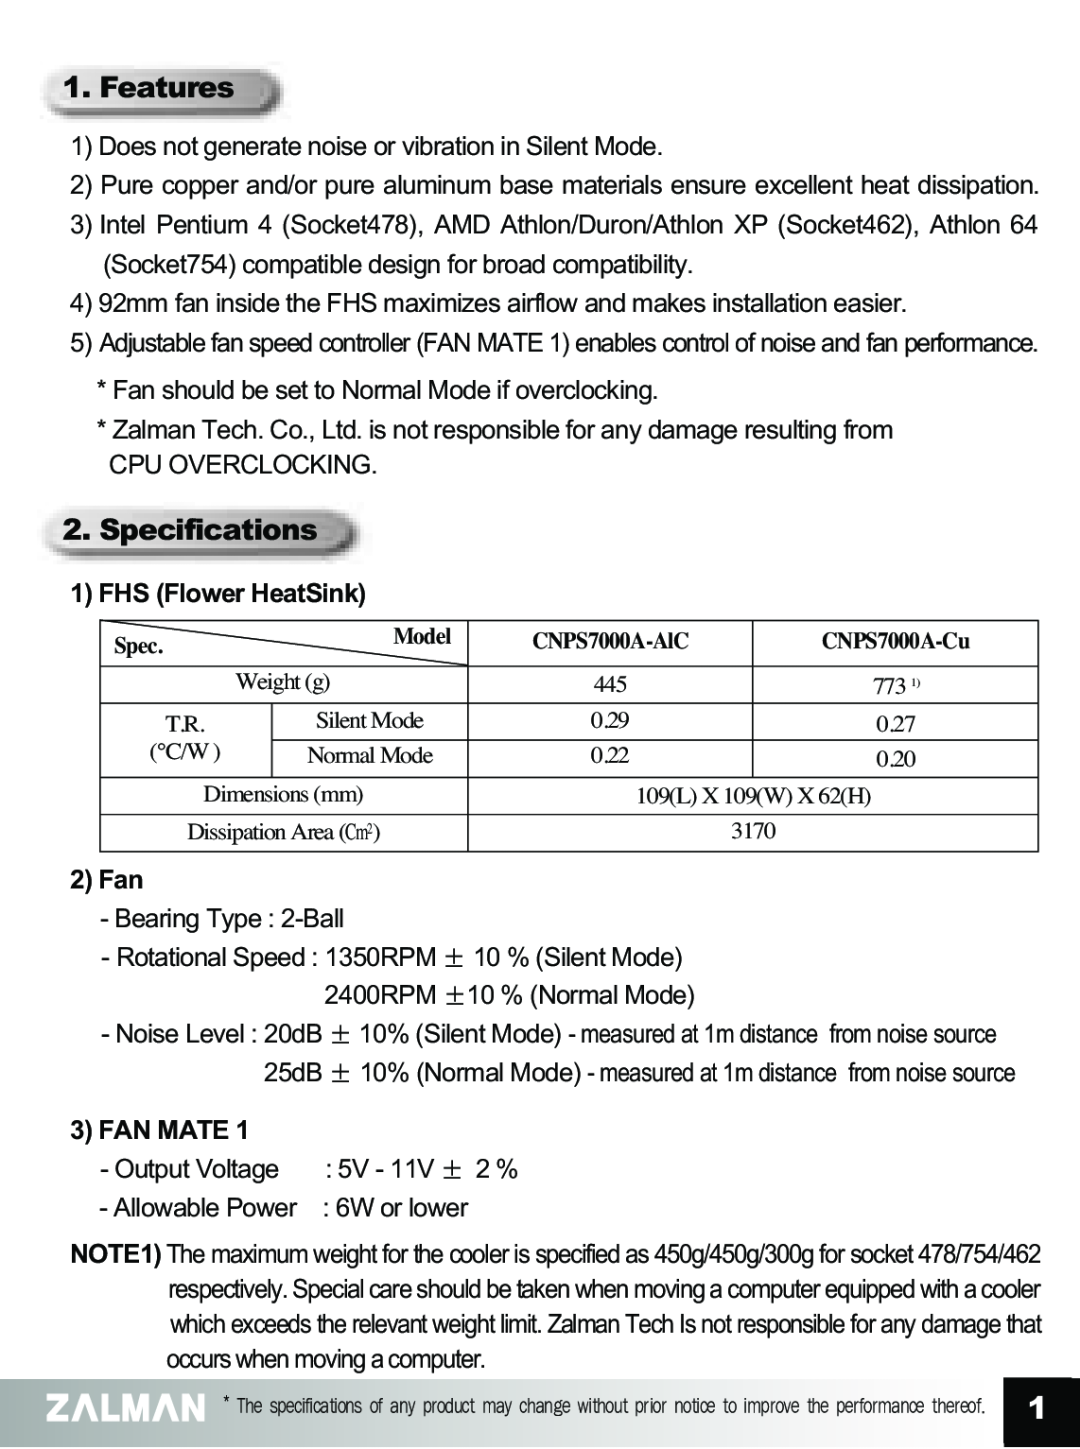 ZALMAN CNPS7000A manual Features, Specifications, 1FHS Flower HeatSink, 2 Fan, 3FAN MATE 